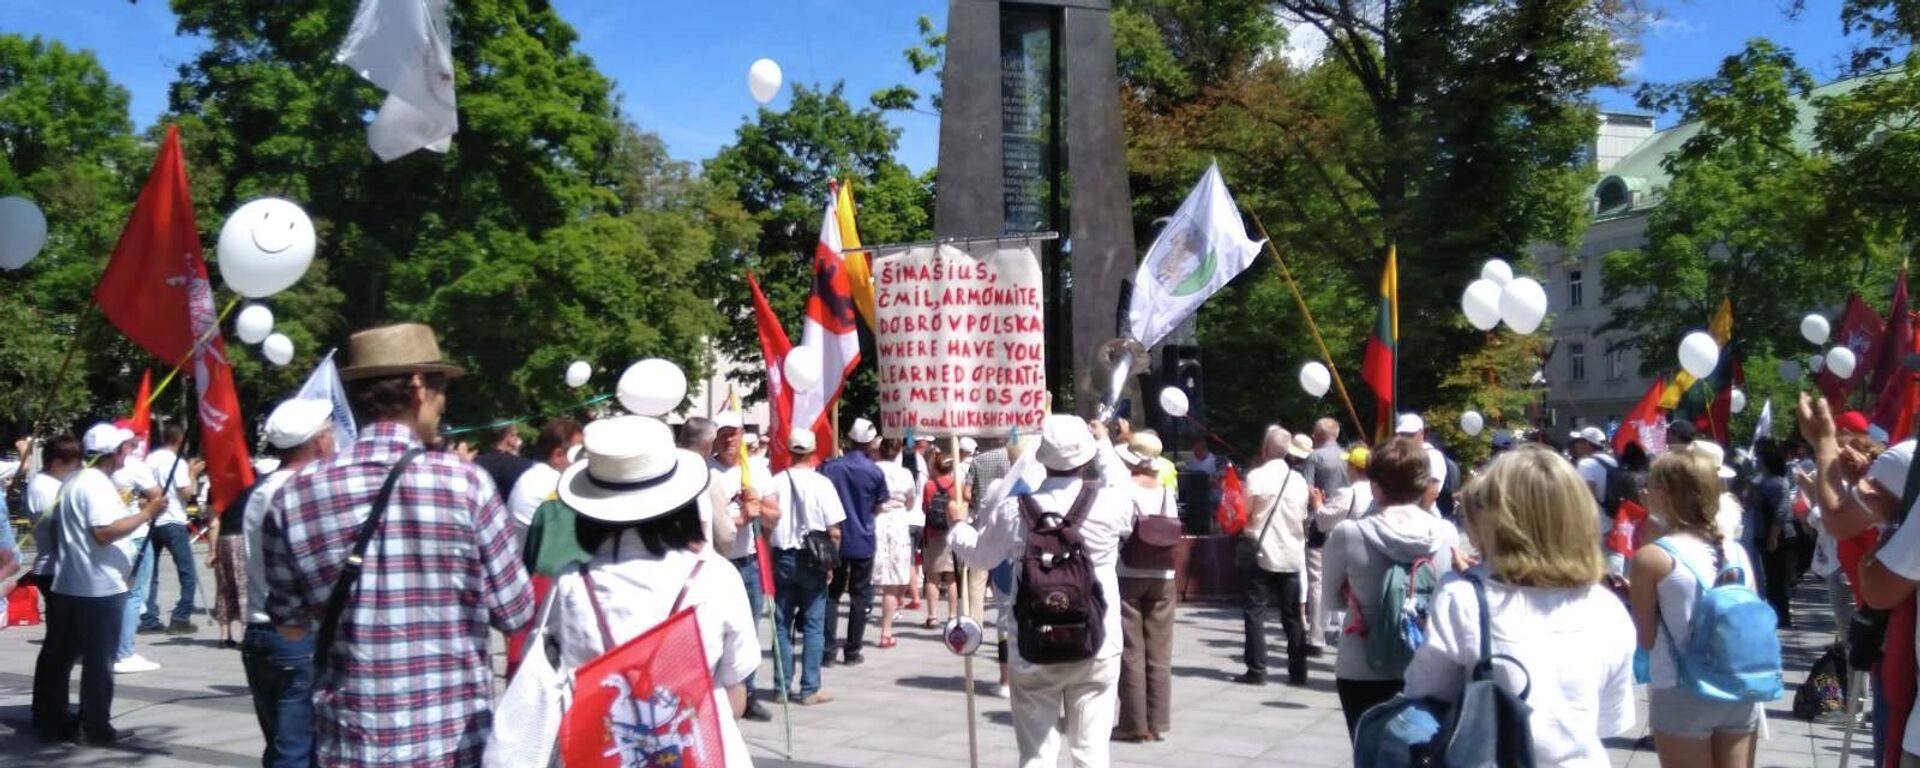 Митинг в защиту семьи на площади имени Винцаса Кудирки напротив здания правительства Литвы - Sputnik Литва, 1920, 16.06.2021